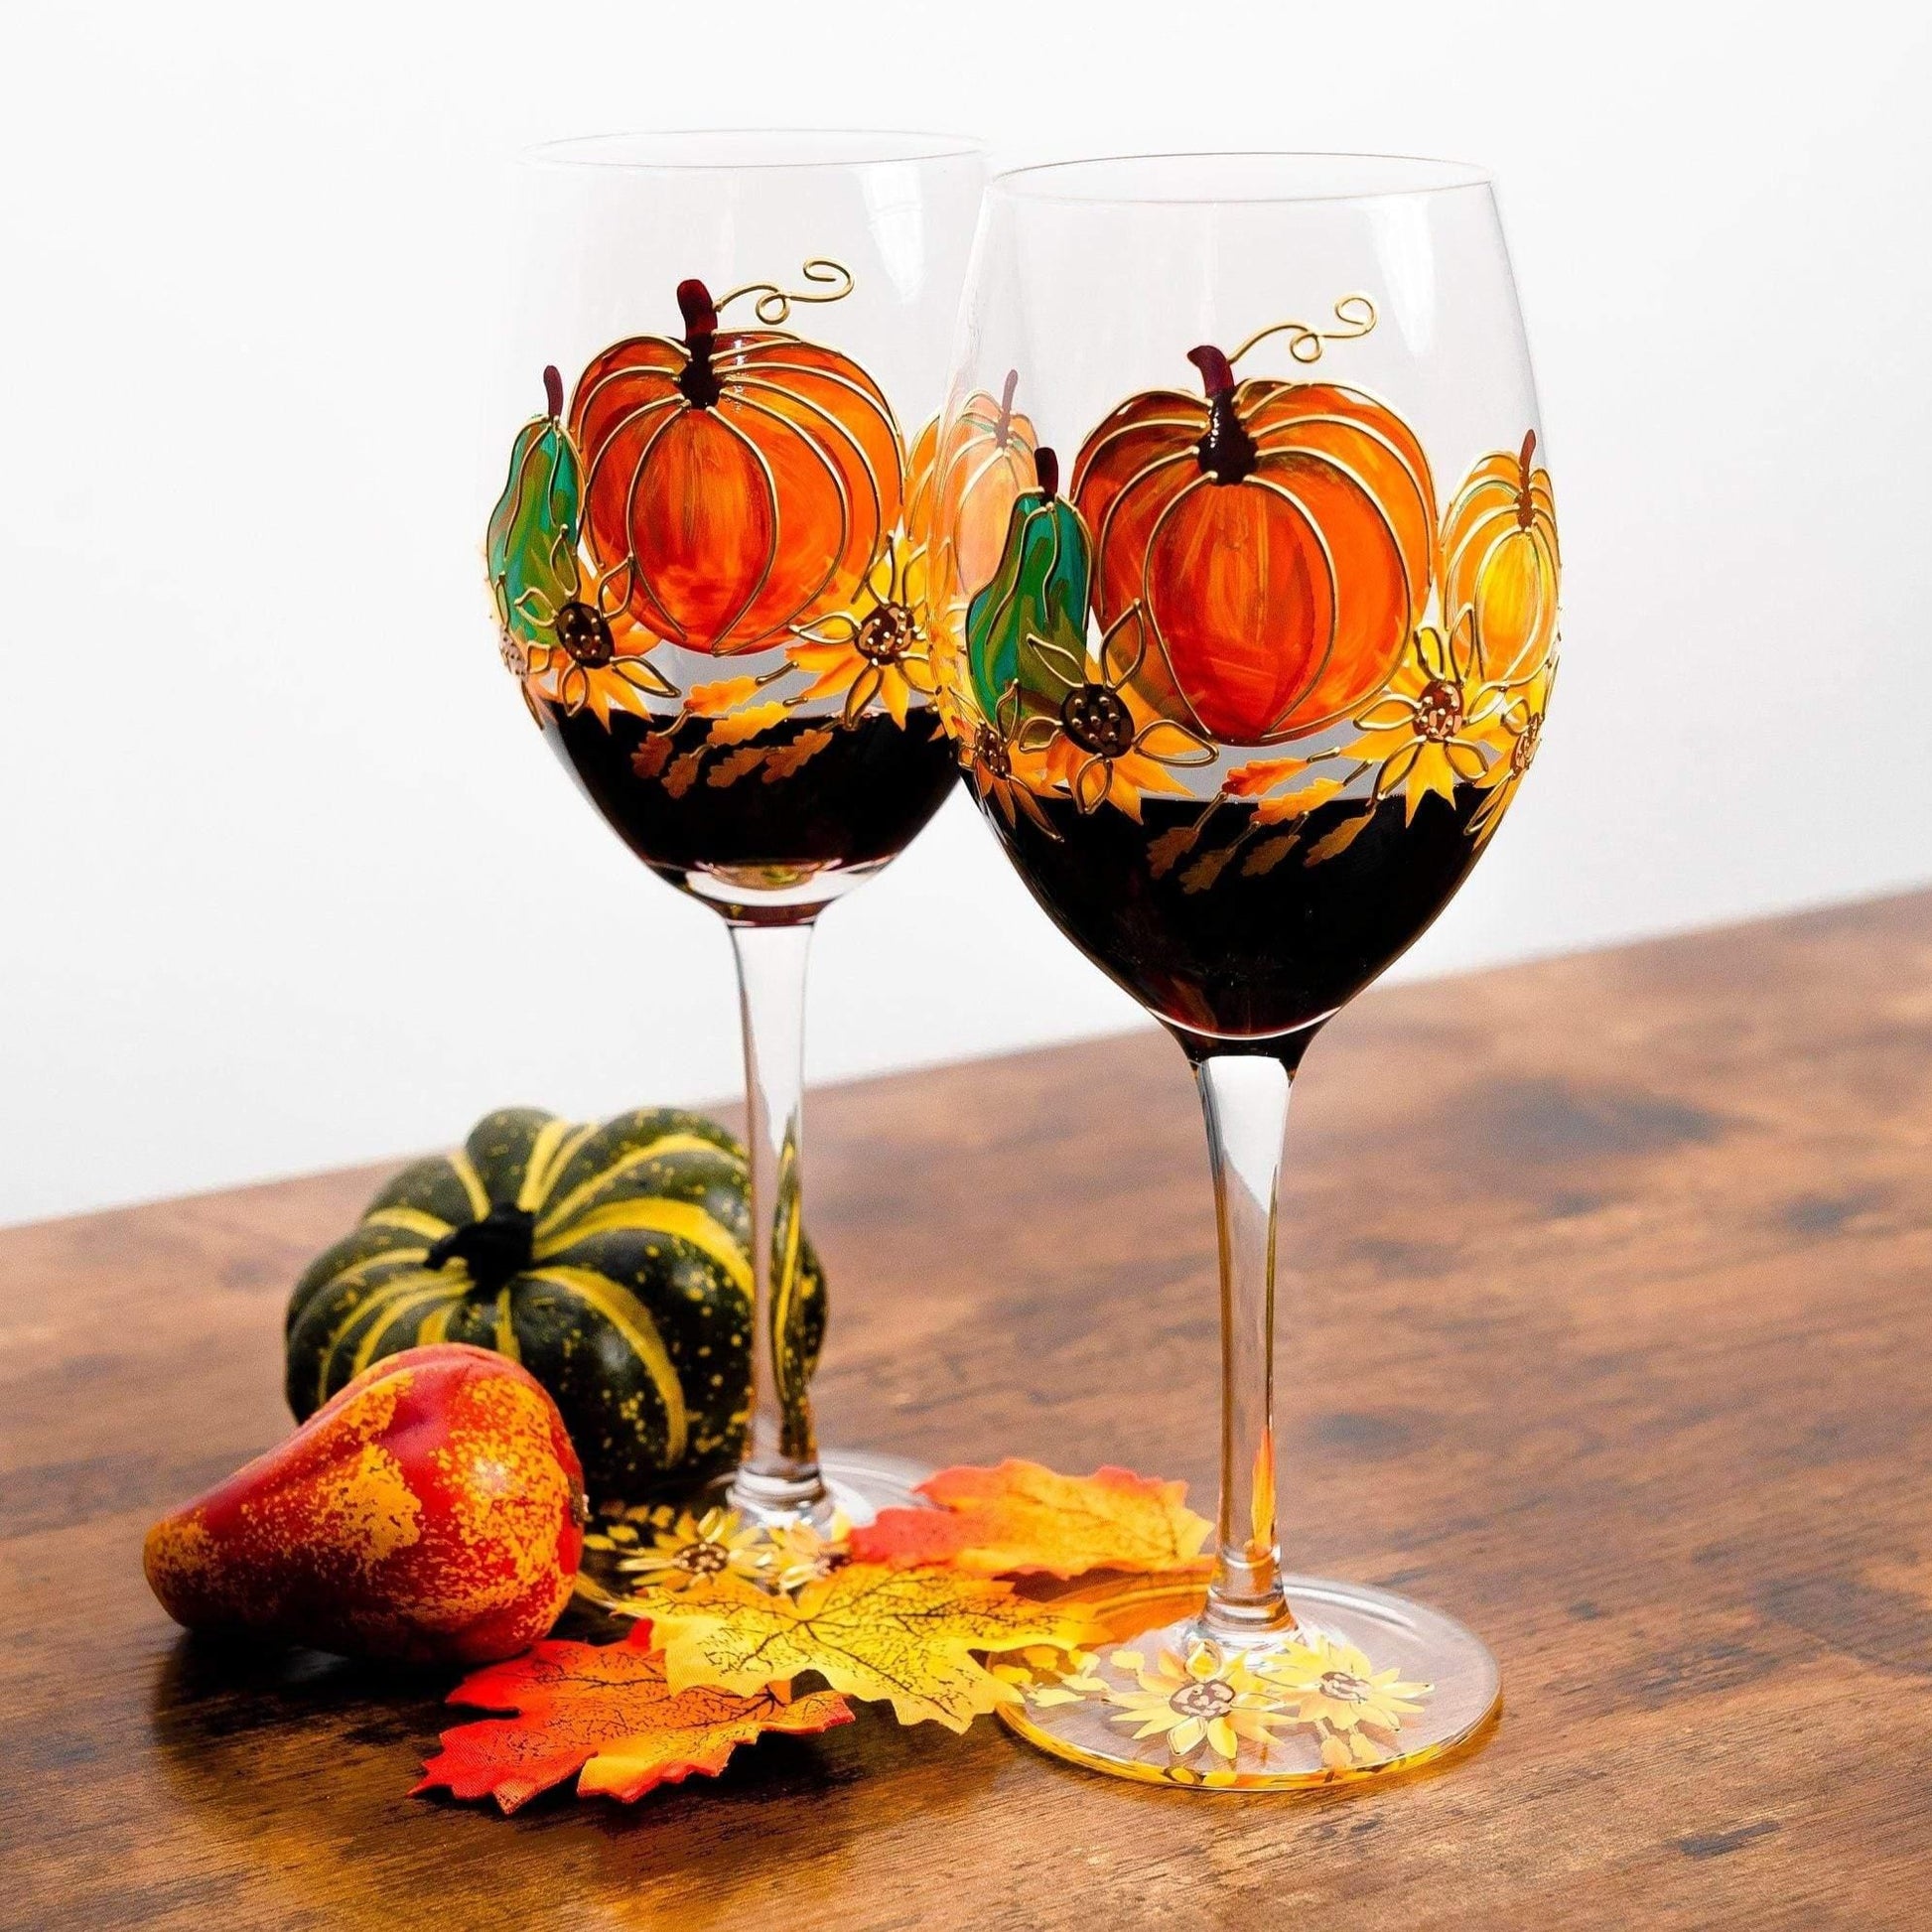 https://jerseyartglass.com/cdn/shop/products/jersey-art-glass-thanksgiving-wine-glasses-set-of-2-thanksgiving-decorations-for-table-fall-wedding-decor-fall-centerpiece-pumpkin-mug-30642910396580.jpg?v=1683480066&width=1946